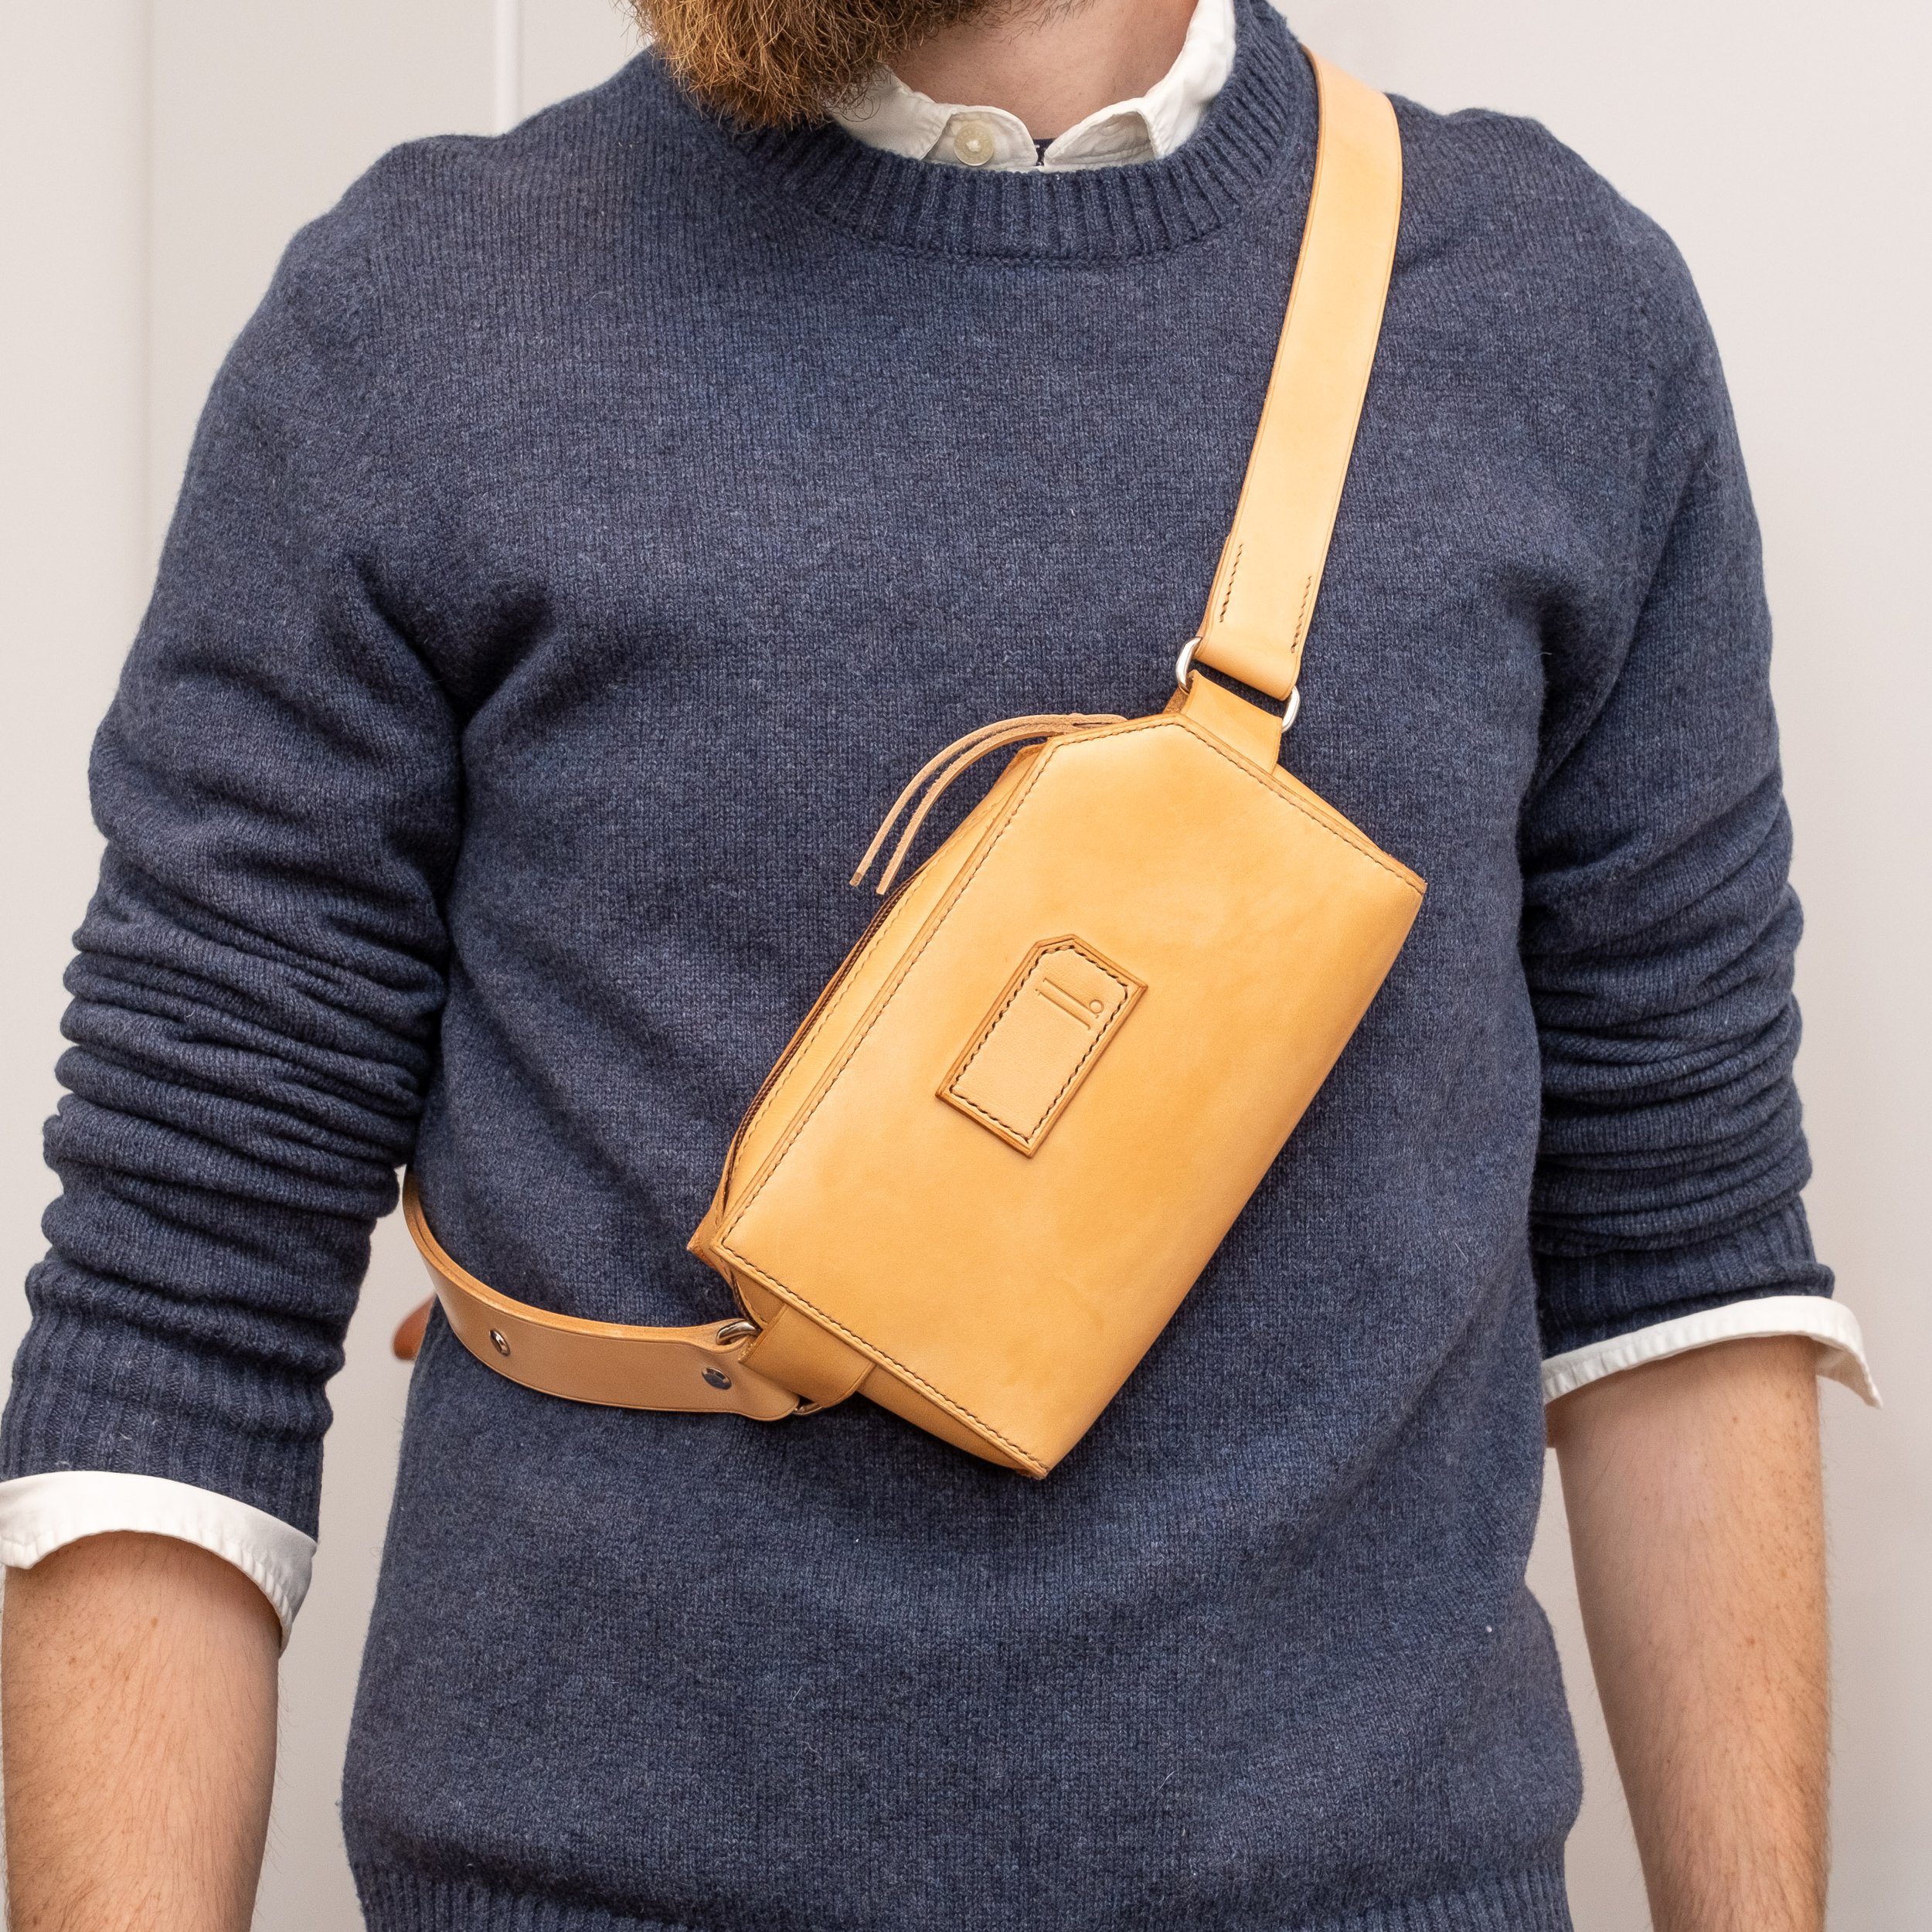 Elegant sling pouch for men